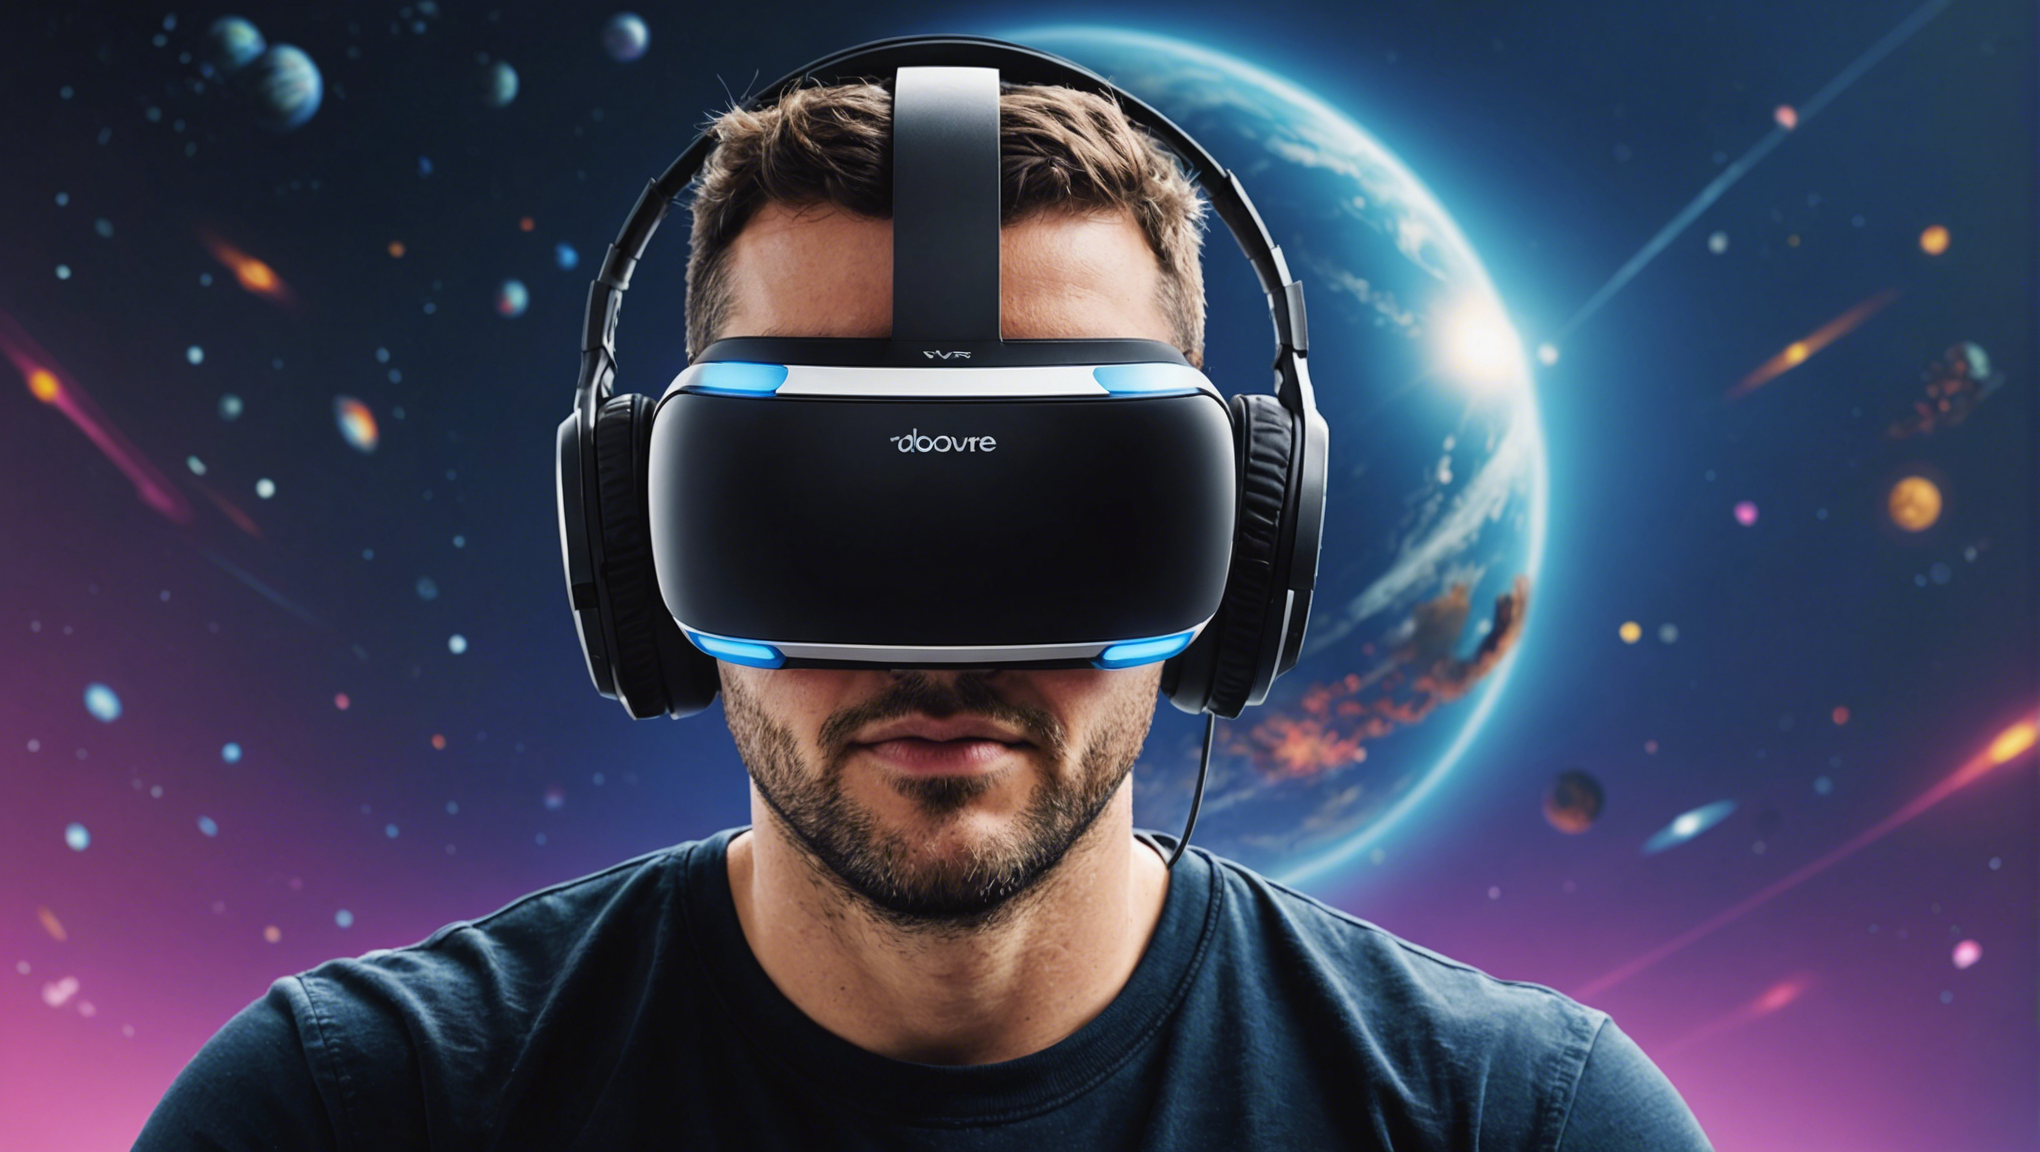 découvrez le casque vr et plongez dans un univers virtuel réaliste avec une expérience immersive incroyable !